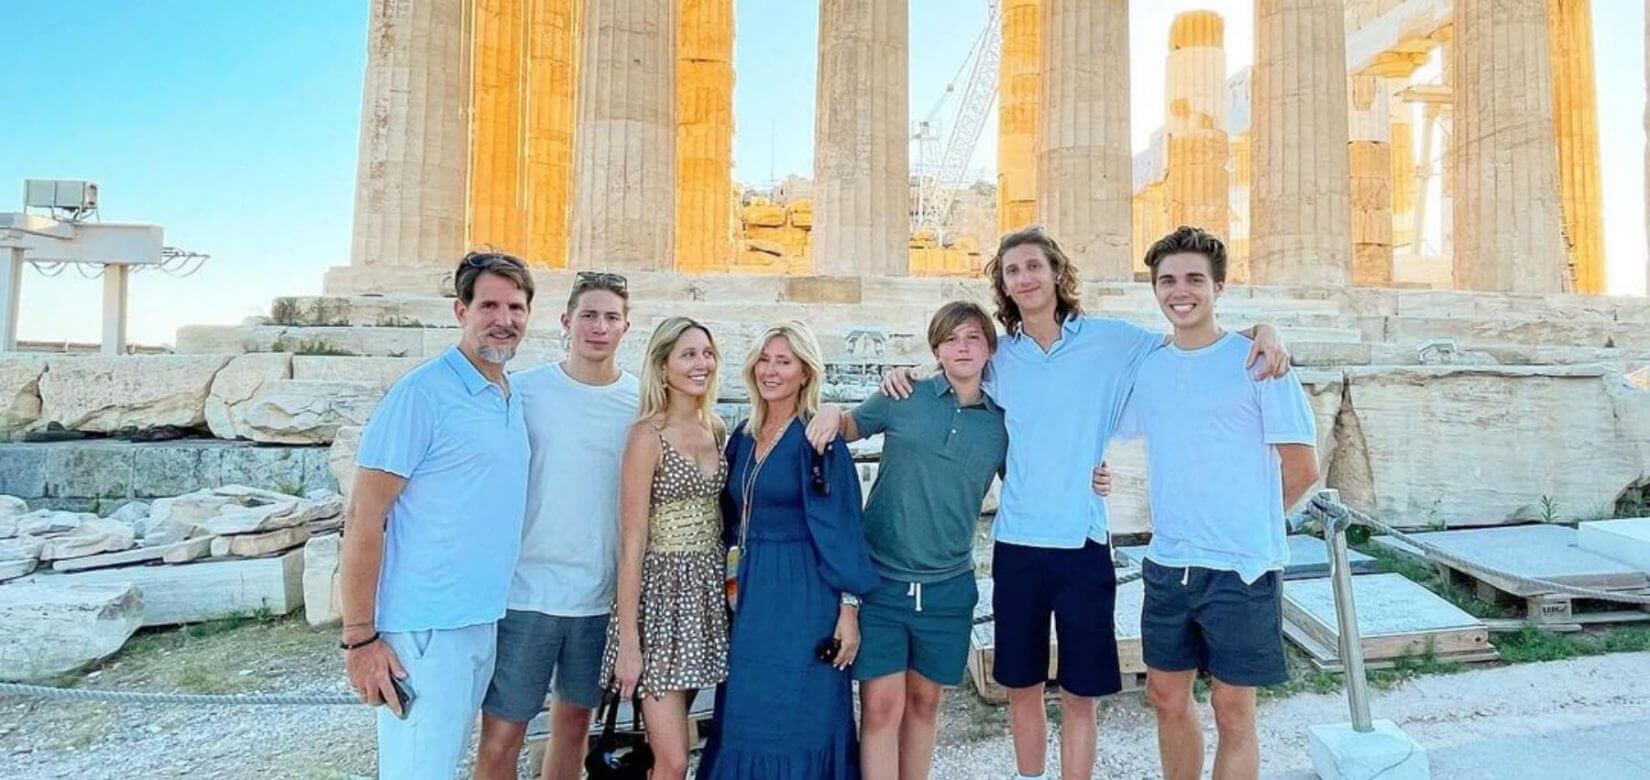 Παύλος - Μαρί Σαντάλ: Οι διακοπές στην Ελλάδα και η βόλτα στην Ακρόπολη με τα παιδιά τους